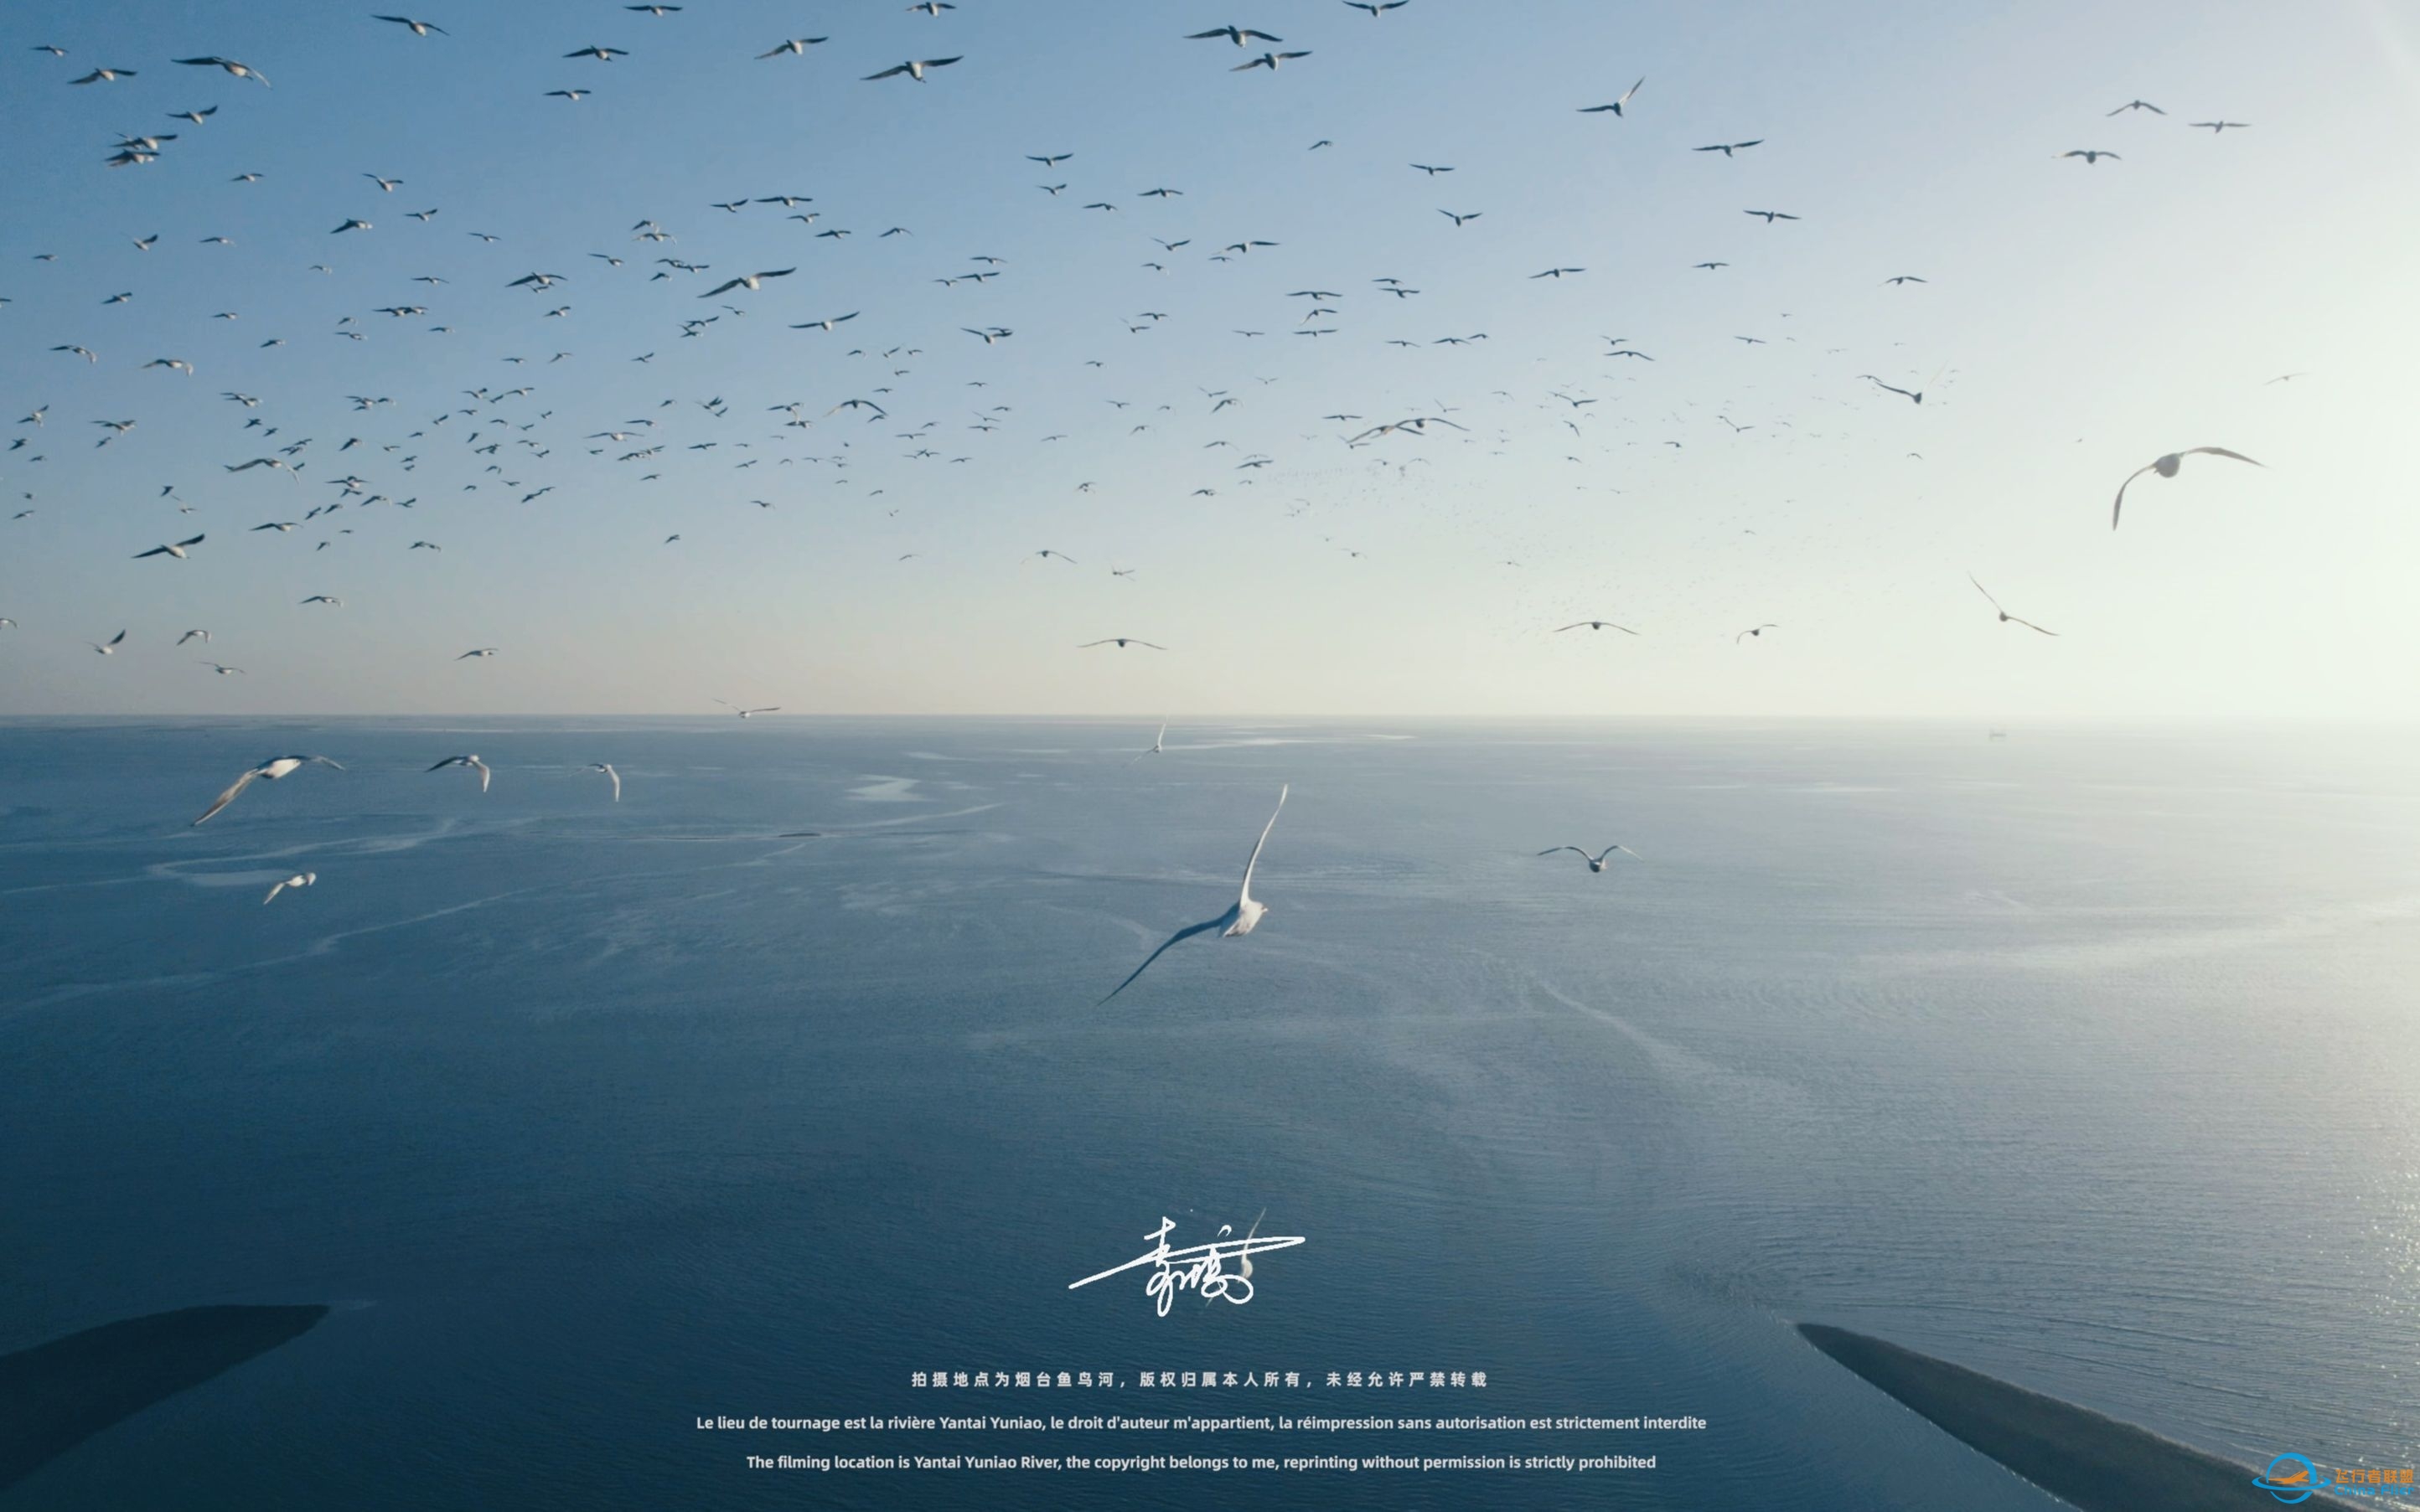 【沉浸式飞行】[DJI AIR 2S]一次跟海鸥一起的沉浸式飞行体验~-2211 